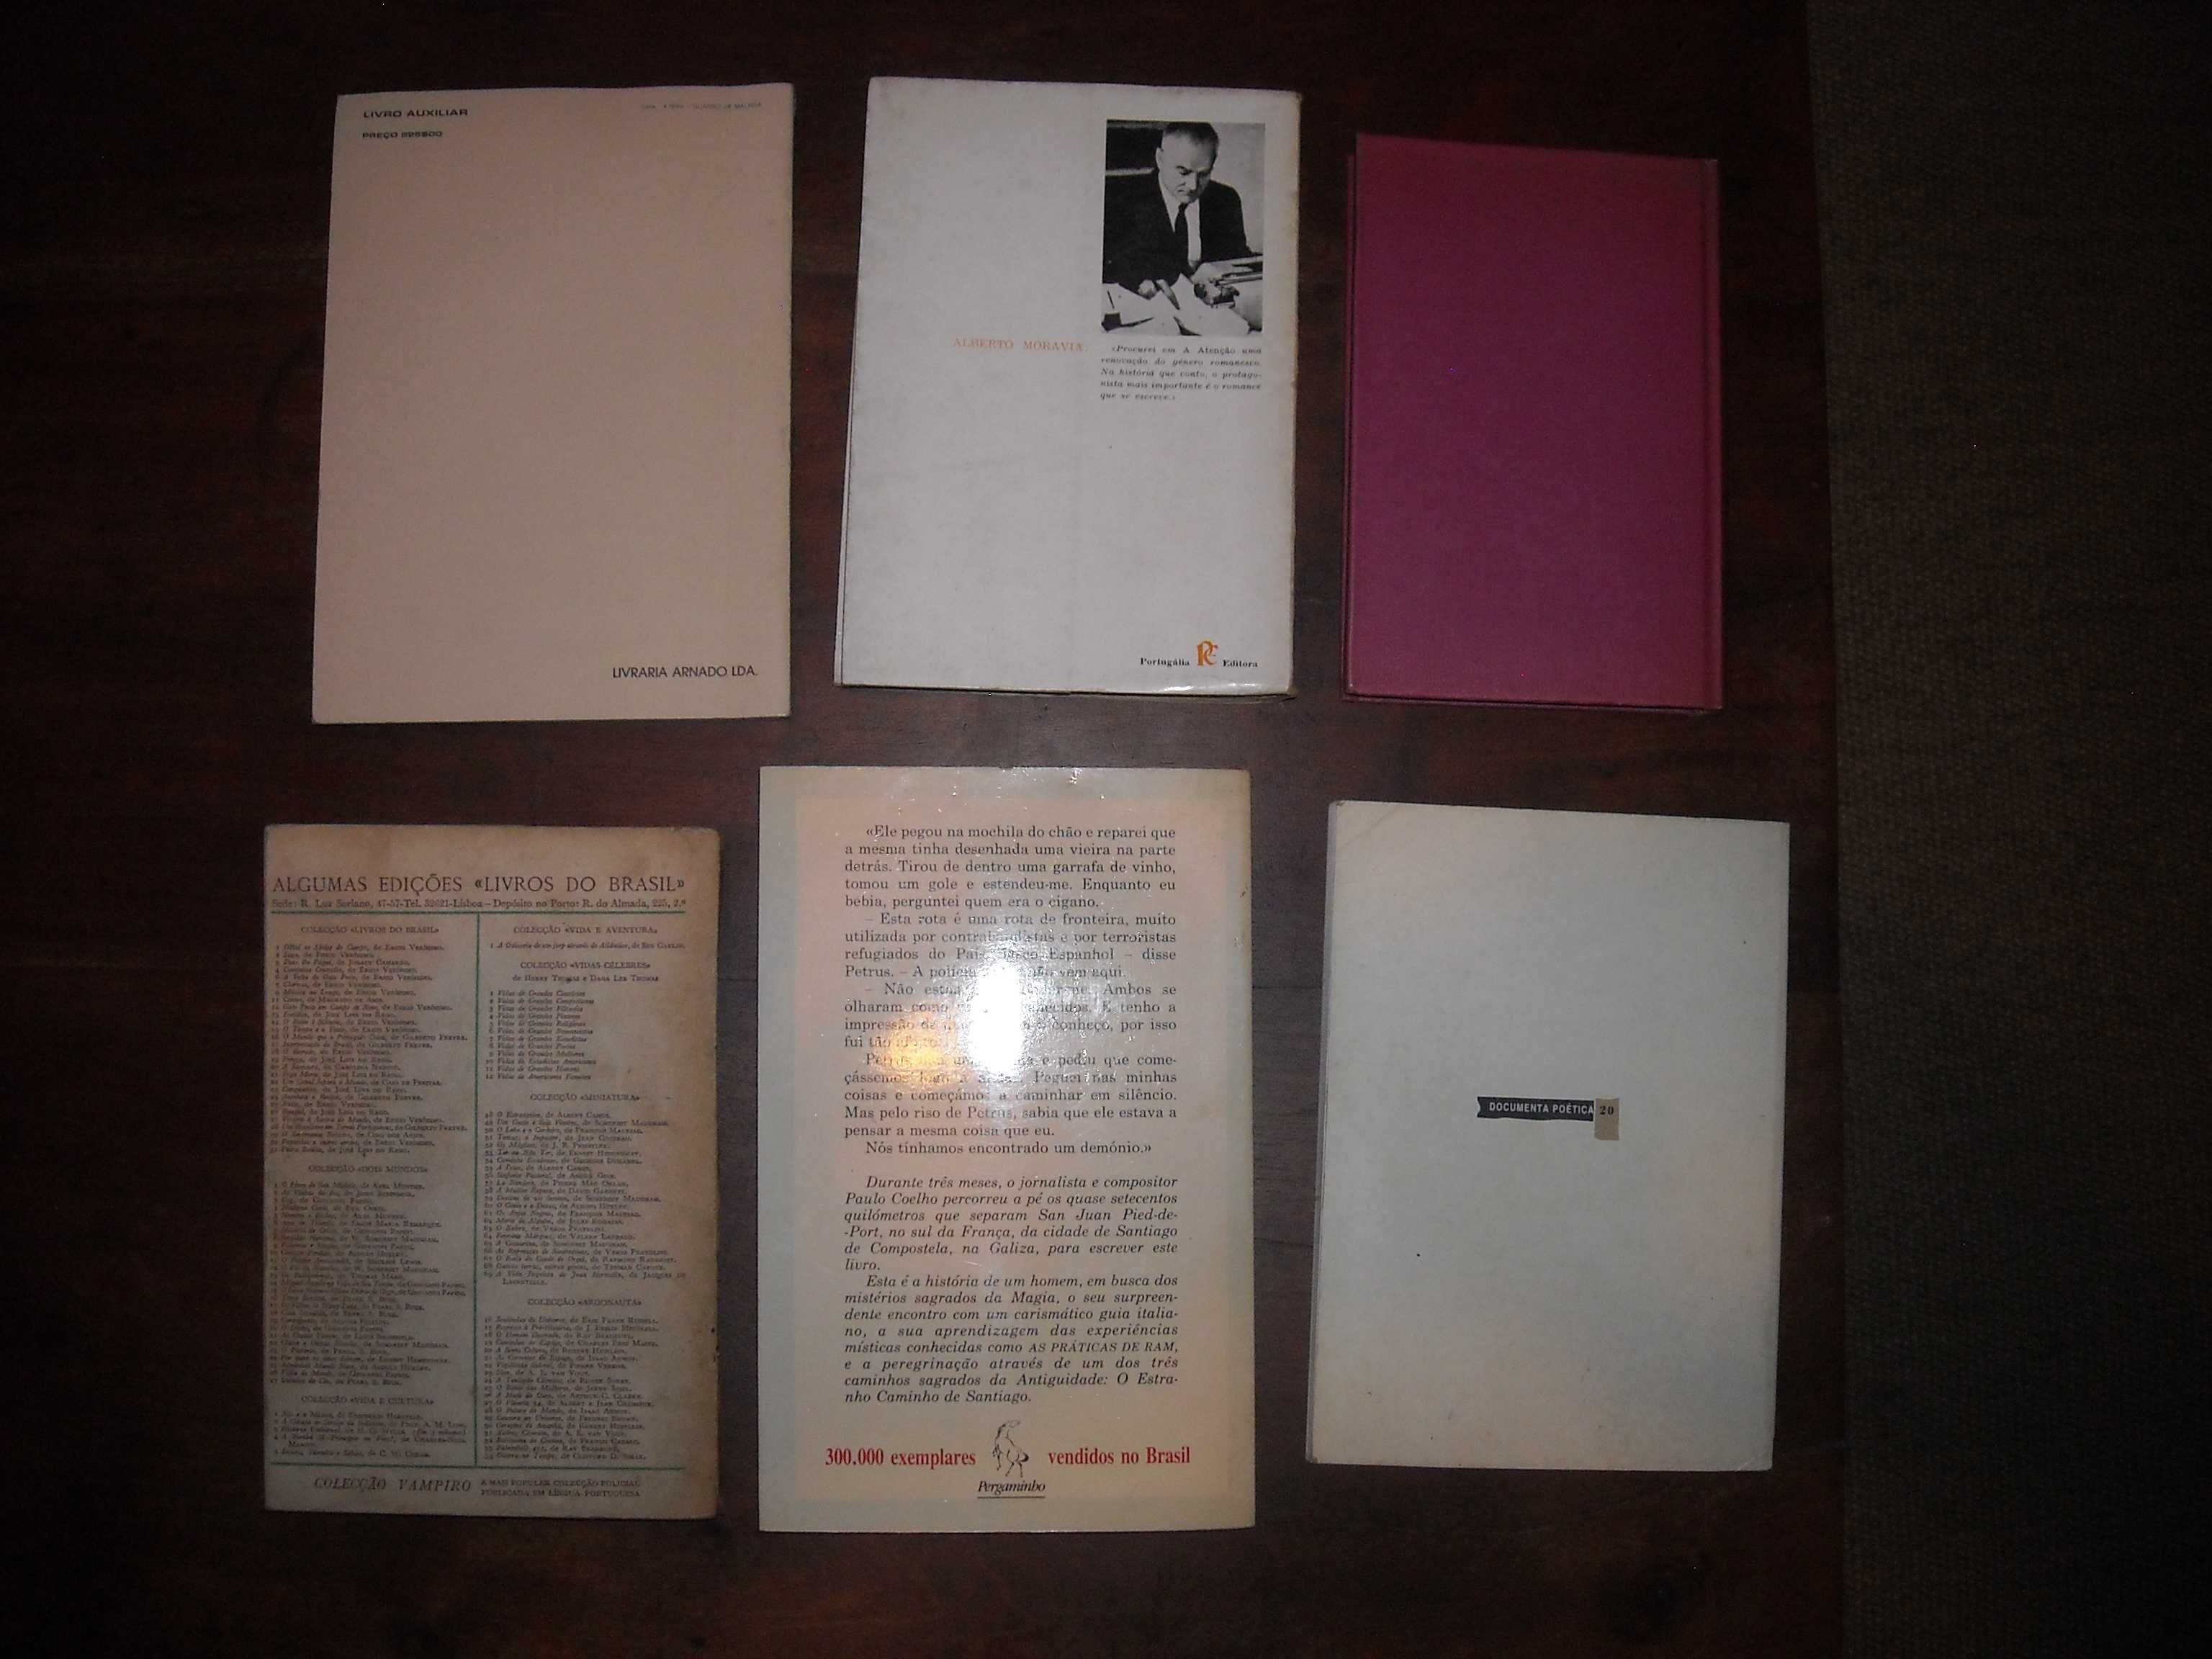 Livros diversos Caldwell, Breton, Gil Vicente, Moravia, Curie, Coelho